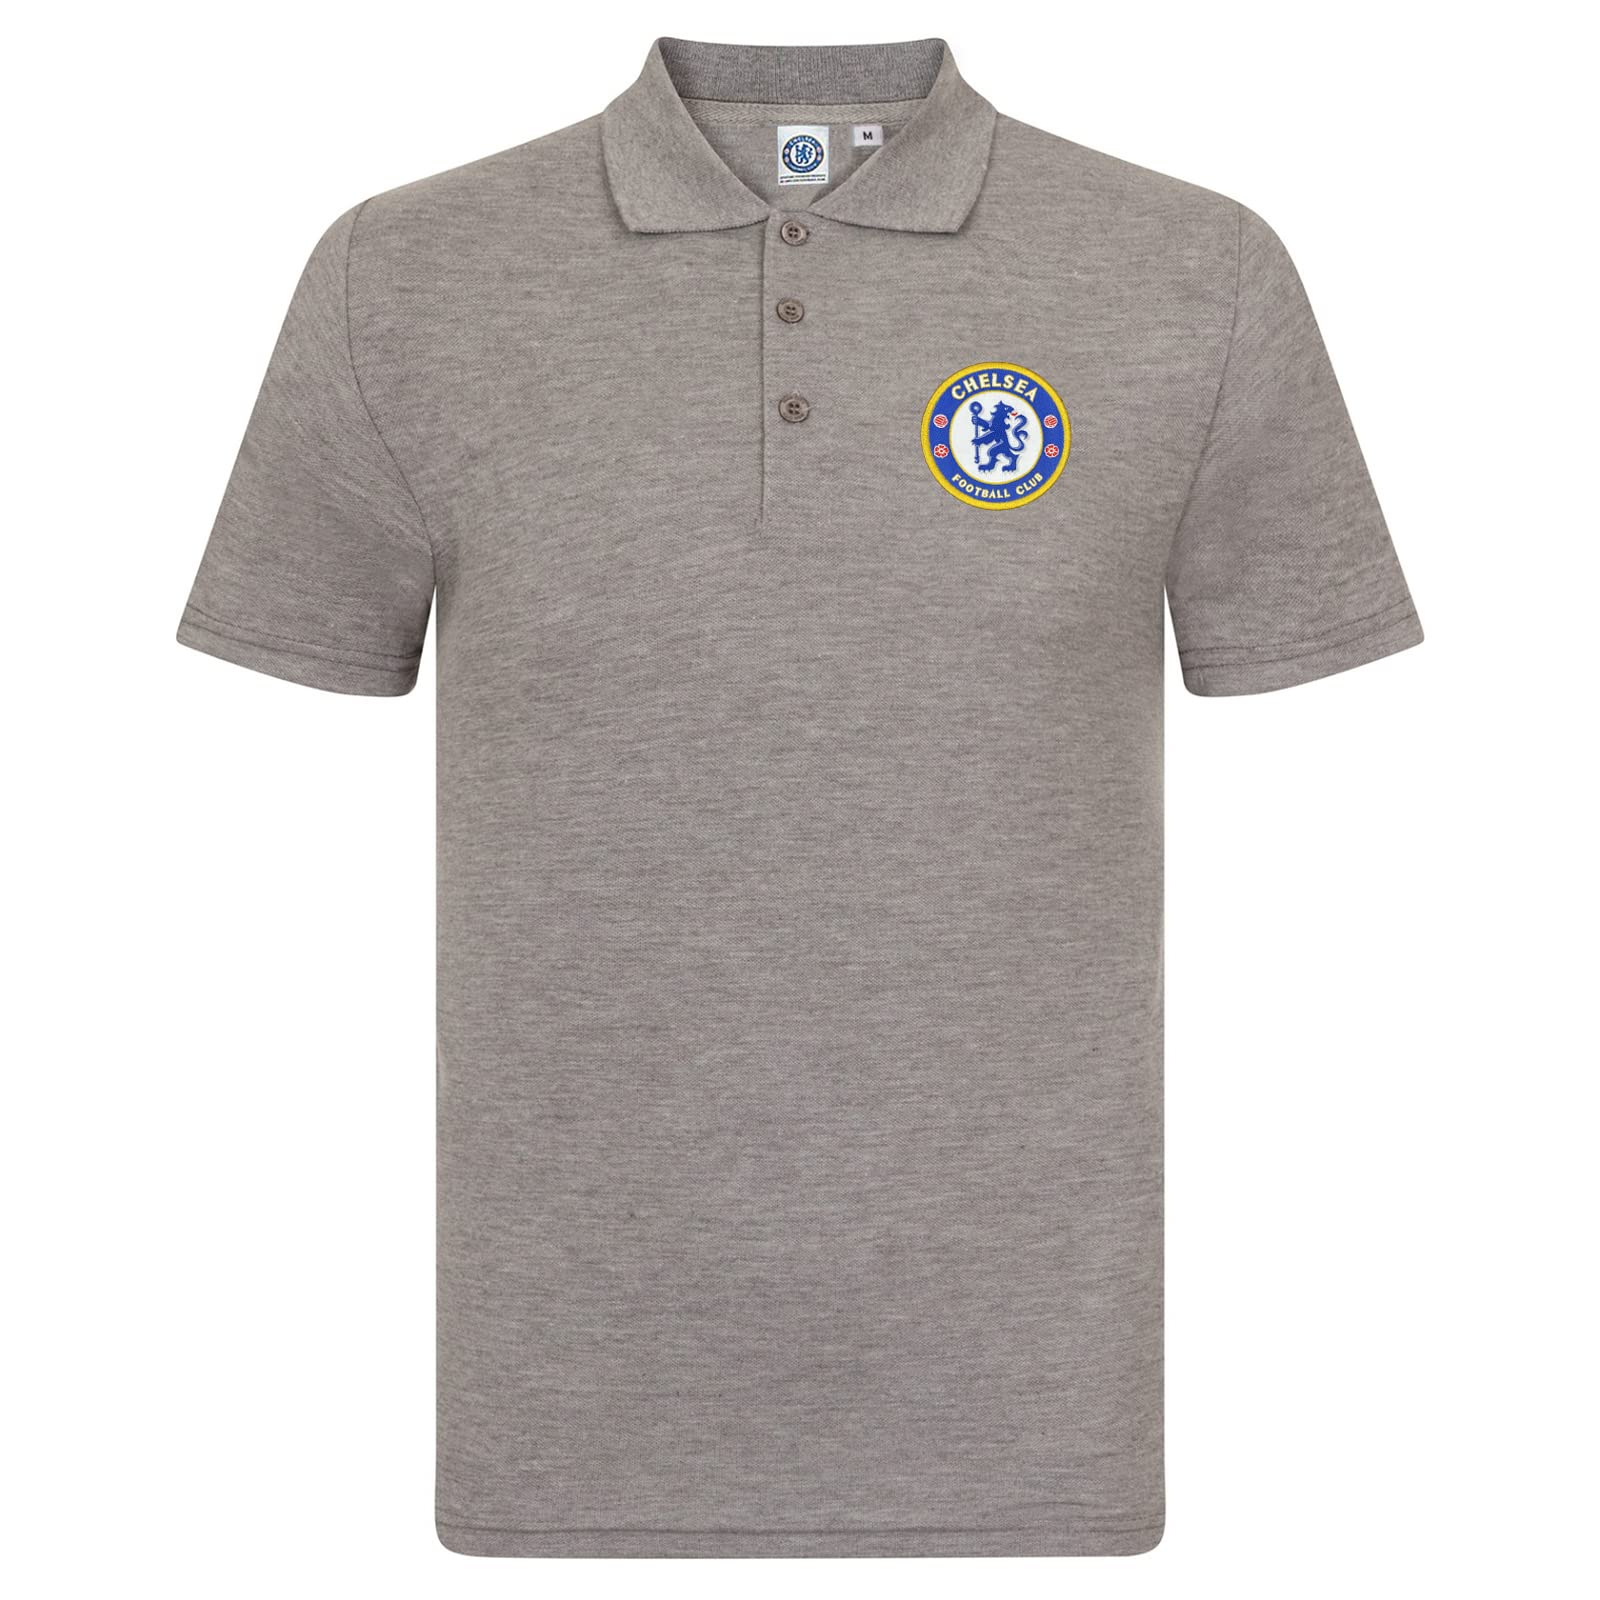 Chelsea FC Herren Polo-Shirt mit originalem Fußball-Wappen - Geschenkartikel - Grau - XL